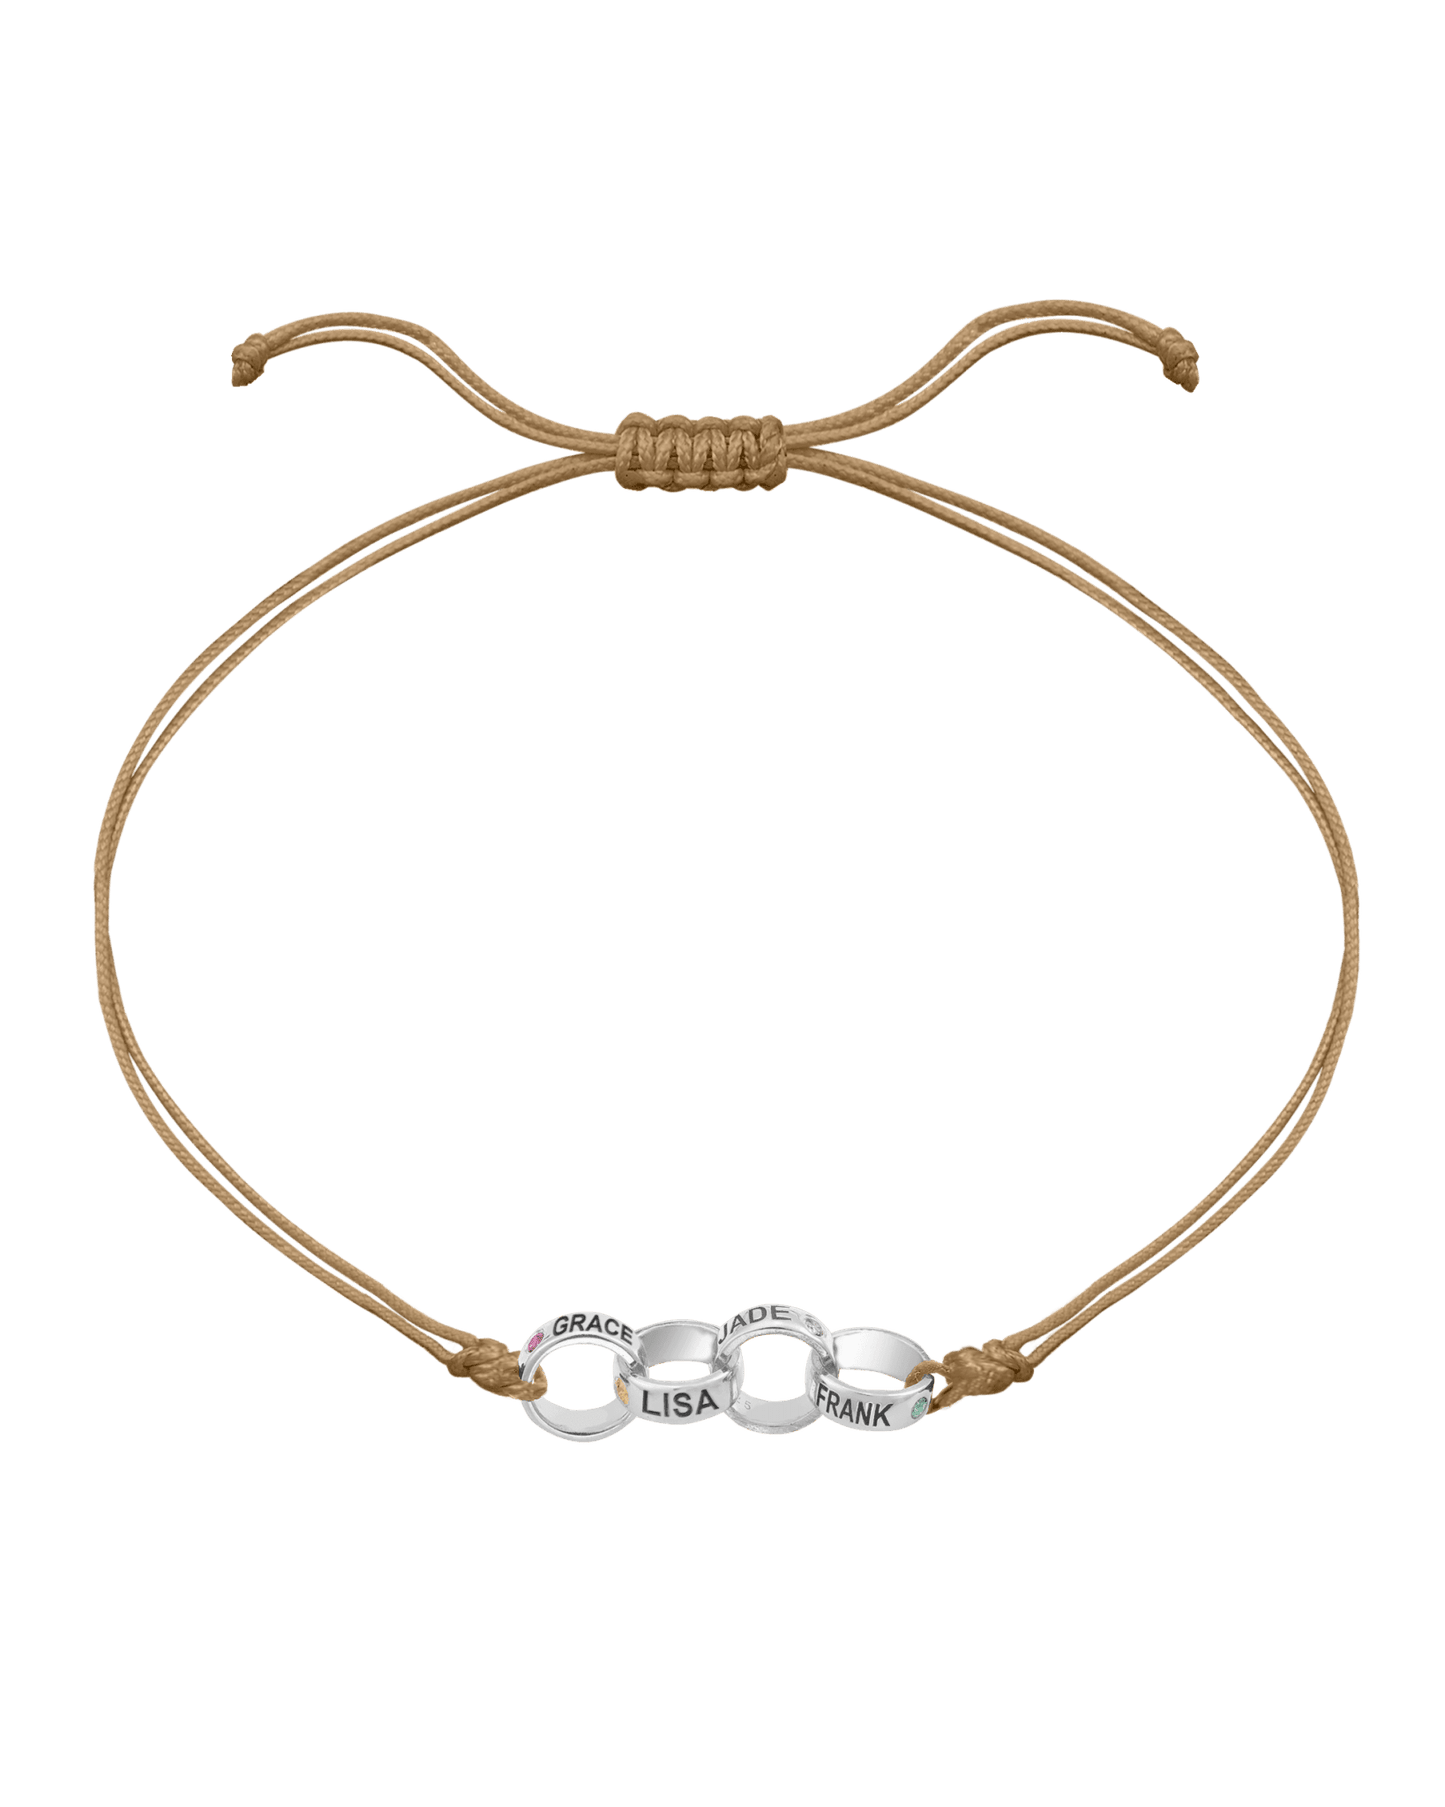 Engravable Links of Love - 925 Sterling Silver Bracelets magal-dev 4 Camel 